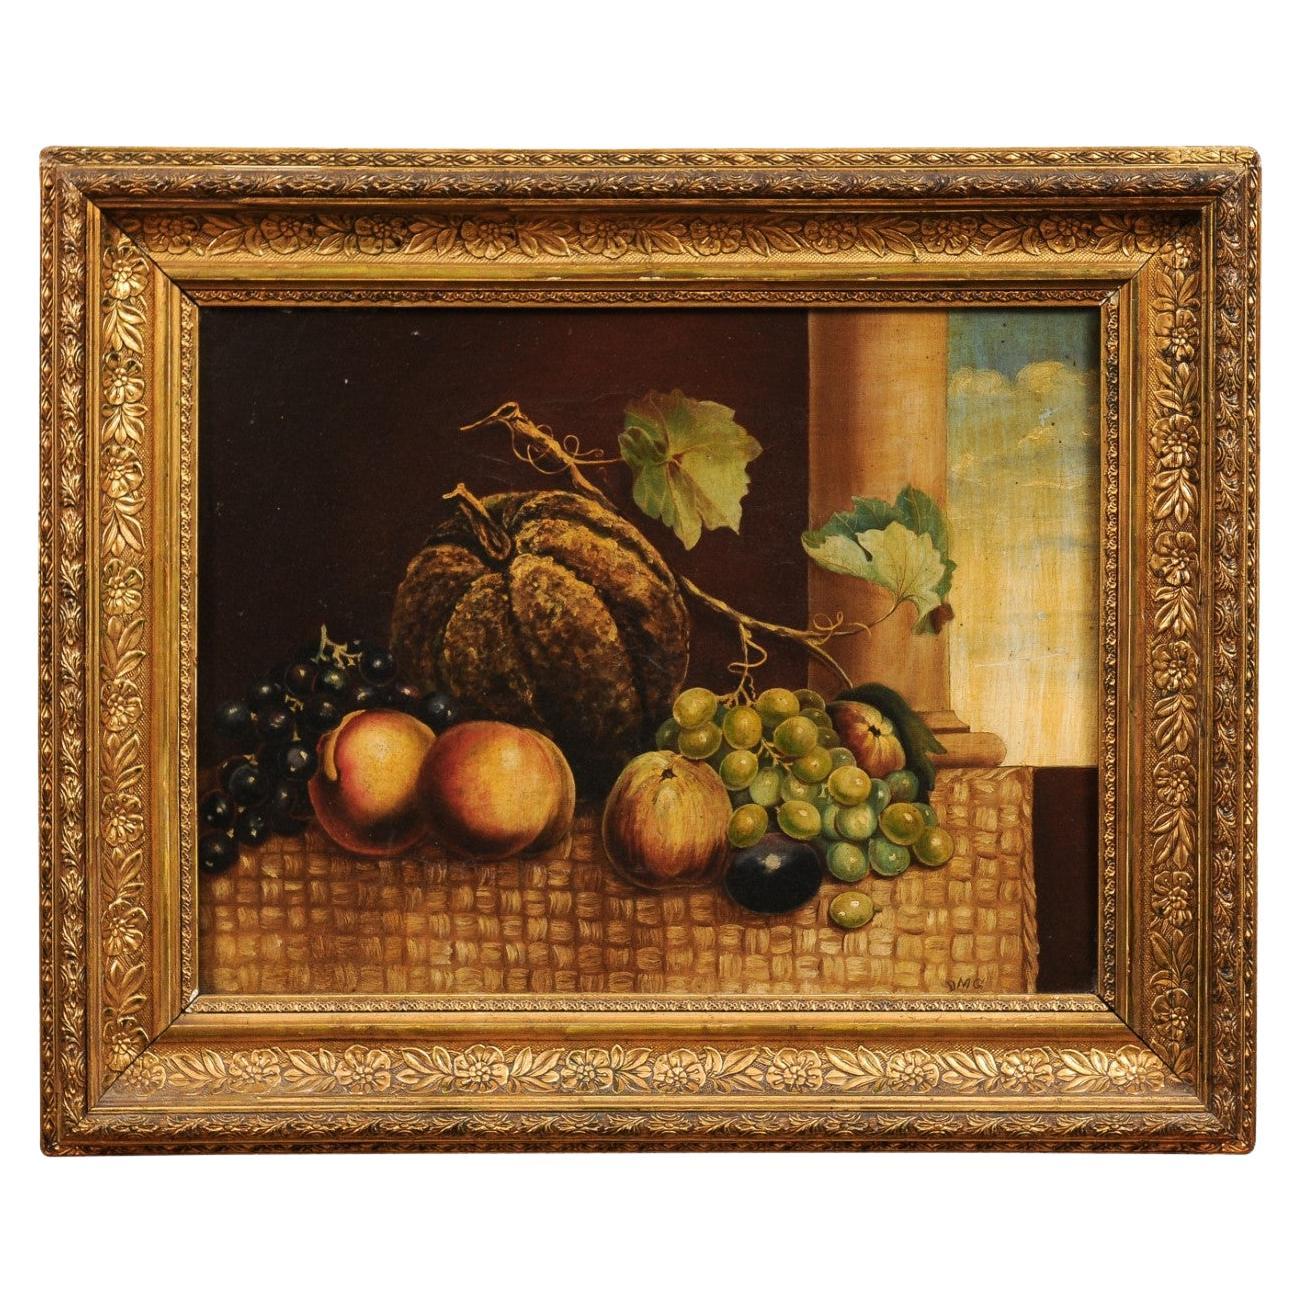 Italienisches Stillleben aus dem 19. Jahrhundert, Öl auf Leinwand, Gemälde mit Obstdarstellung